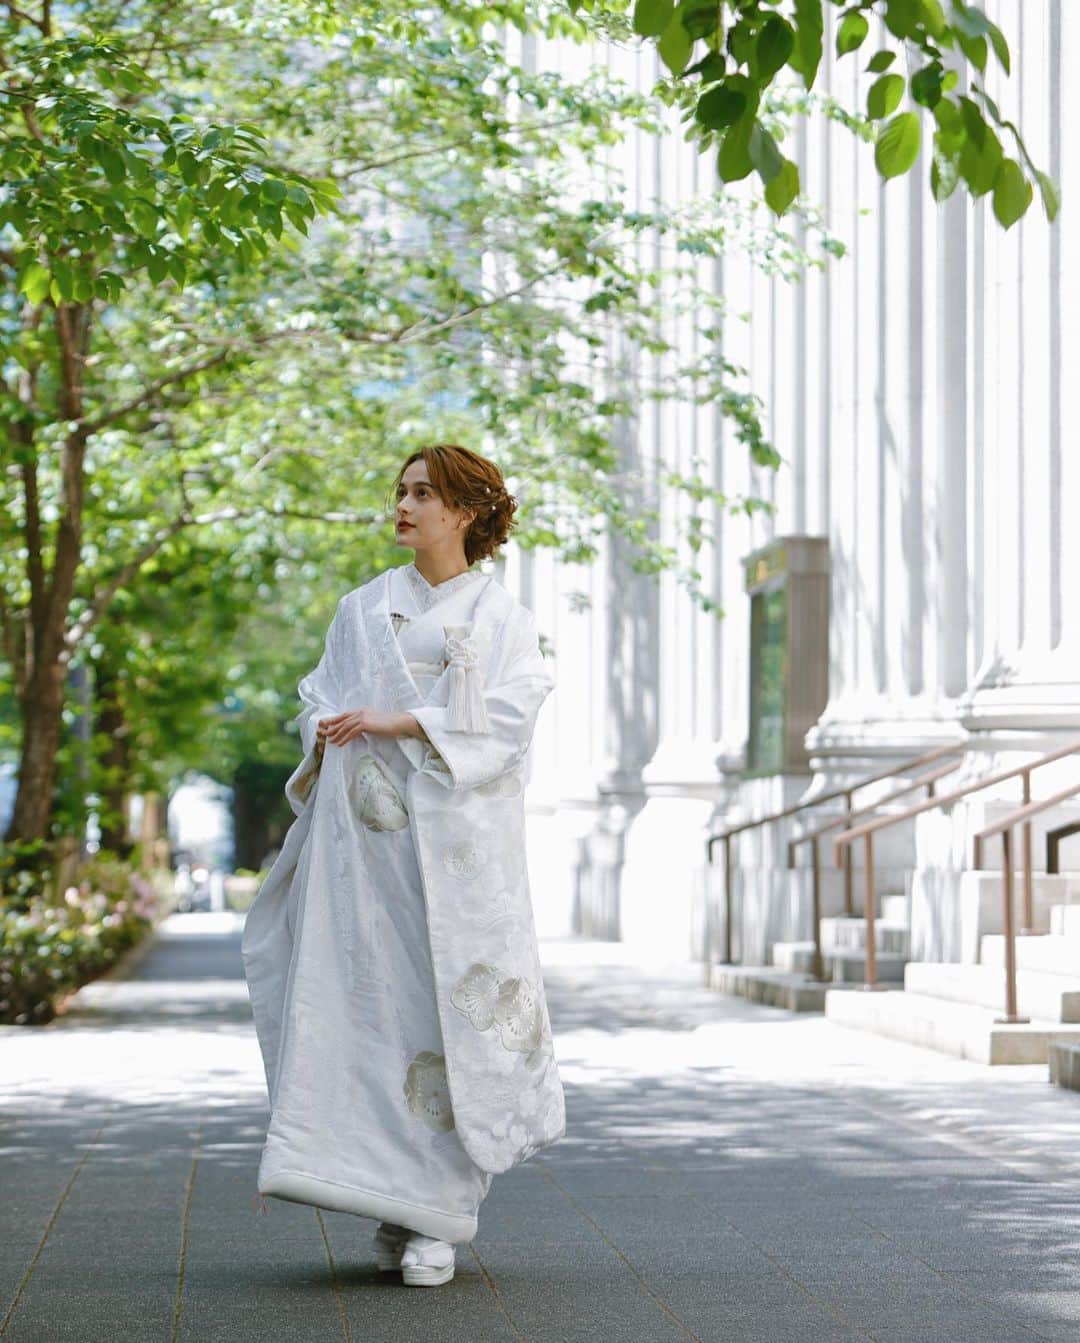 Tomoya Tamadaさんのインスタグラム写真 - (Tomoya TamadaInstagram)「【 @kimonoito 和装コラボフォトプラン 】  古典的でレトロな王道和装スタイルから、形式に捉われないファッション性の高いモダンなスタイルまで、お二人の個性を活かした特別なお写真をご提案させていただきます。  ●コラボフォトプラン内容  ・スタジオ撮影 or ロケーション撮影 ・新婦様衣裳 1式 (白無垢、色打掛、引き振袖から1点) ・新郎様衣裳 1式 (黒紋服、色紋服から1点) ・ヘアメイク&着付け ・ブーケ/ヘッドドレス ・撮影(100カット以上〜)  ＊白無垢＋色打掛の和装2点のプランもありますのでお気軽にお問い合わせ下さいませ。  こちらのコラボプランでは、 @masashiro_hosaka  @tama_hairmake が担当させて頂きます。  ●お問い合わせ @kimonoitoのハイライトにあります、 ラインアカウントQRコードを読み込んで頂き、 ご連絡お待ちしております。  上記以外のお問い合わせ先は  ・kimono絲HP ・TEL:0368211710  こちらまで、宜しくお願い致します。  ご質問・ご相談は【お問い合わせ】フォームまで お気軽にご連絡くださいませ。  ＿＿＿＿＿＿＿＿＿＿＿＿＿＿＿＿＿＿＿＿＿＿＿＿＿＿  【 現在、募集中のセミナー 】  ●7月10日(月曜日)  岡山  ●7月11日(火曜日)  岡山  ●7月18日(火曜日)  東京  ●7月25日(火曜日)  仙台  ●8月7日(月曜日)  鹿児島  ●8月21日(月曜日)  大阪   ●8月22日(火曜日)  大阪  当日の詳細、ご応募に関しましてはホームページの 「セミナー告知」に記載しておりますので ご応募お待ちしております☺︎  ＿＿＿＿＿＿＿＿＿＿＿＿＿＿＿＿＿＿＿＿＿＿＿＿＿＿  開催告知しているセミナー以外でも 個人様、企業様へ向けた臨店講習も行なっております。 臨店講習のお問い合わせは、こちらから宜しくお願い致します。  LINE ID ➡️ @ntb4770x  雑誌、広告、web撮影などのご依頼もお気軽にお問い合わせ下さいませ。 ご依頼に関するお問い合わせは、ホームページの 「お問い合わせ」からご連絡お待ちしております。  #ウェディング#ブライダル#花嫁#結婚式#結婚式準備#前撮り#和装#和装前撮り#weddingphoto#ウェディングフォト#プレ花嫁#プレ花嫁さんと繋がりたい#プレ花嫁準備#2023春婚#2023夏婚#2023秋婚#鹿児島花嫁#東京花嫁#ウェディングヘア#ブライダルヘア#ヘアアレンジ#ヘアメイク#花嫁ヘア#ウェディングドレス#weddinghair#bridalhair#新娘化妝#新娘秘書#新娘髮型#웨딩」6月29日 22時26分 - tama_hairmake